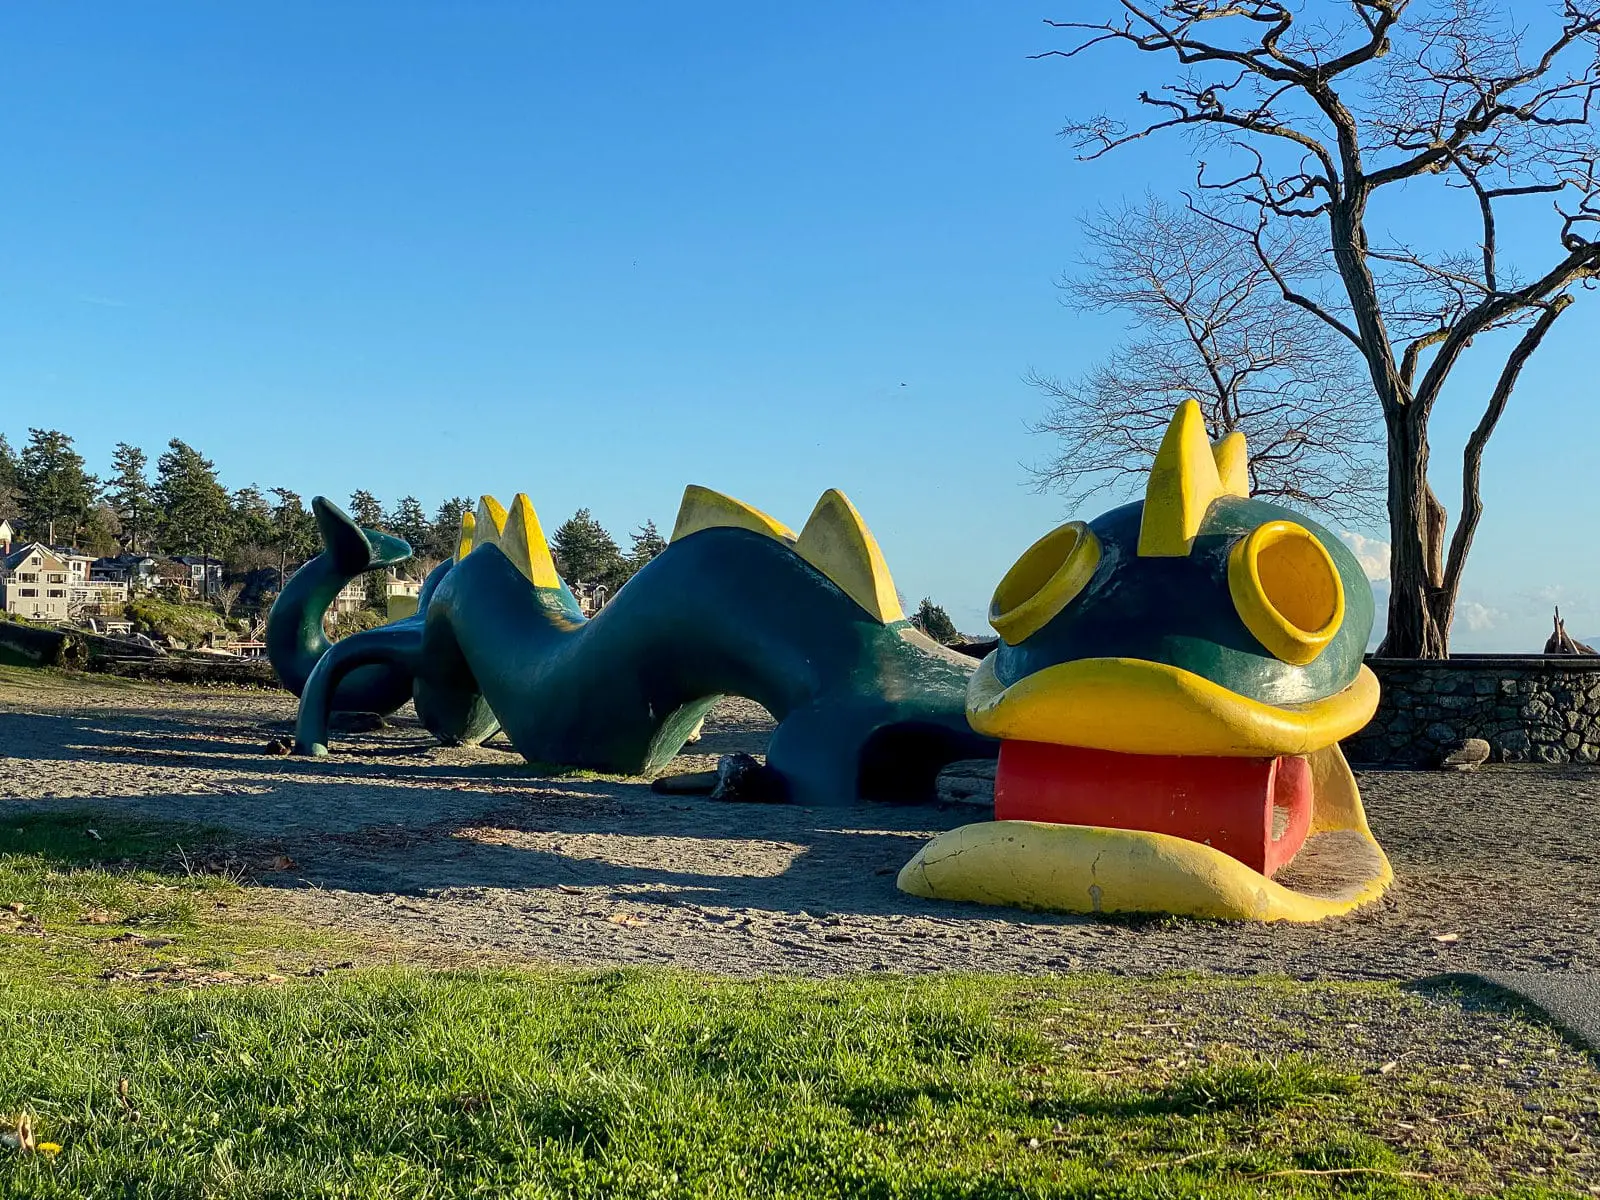 The Cadborosaurus playground structure at Cadboro-Gyro Park